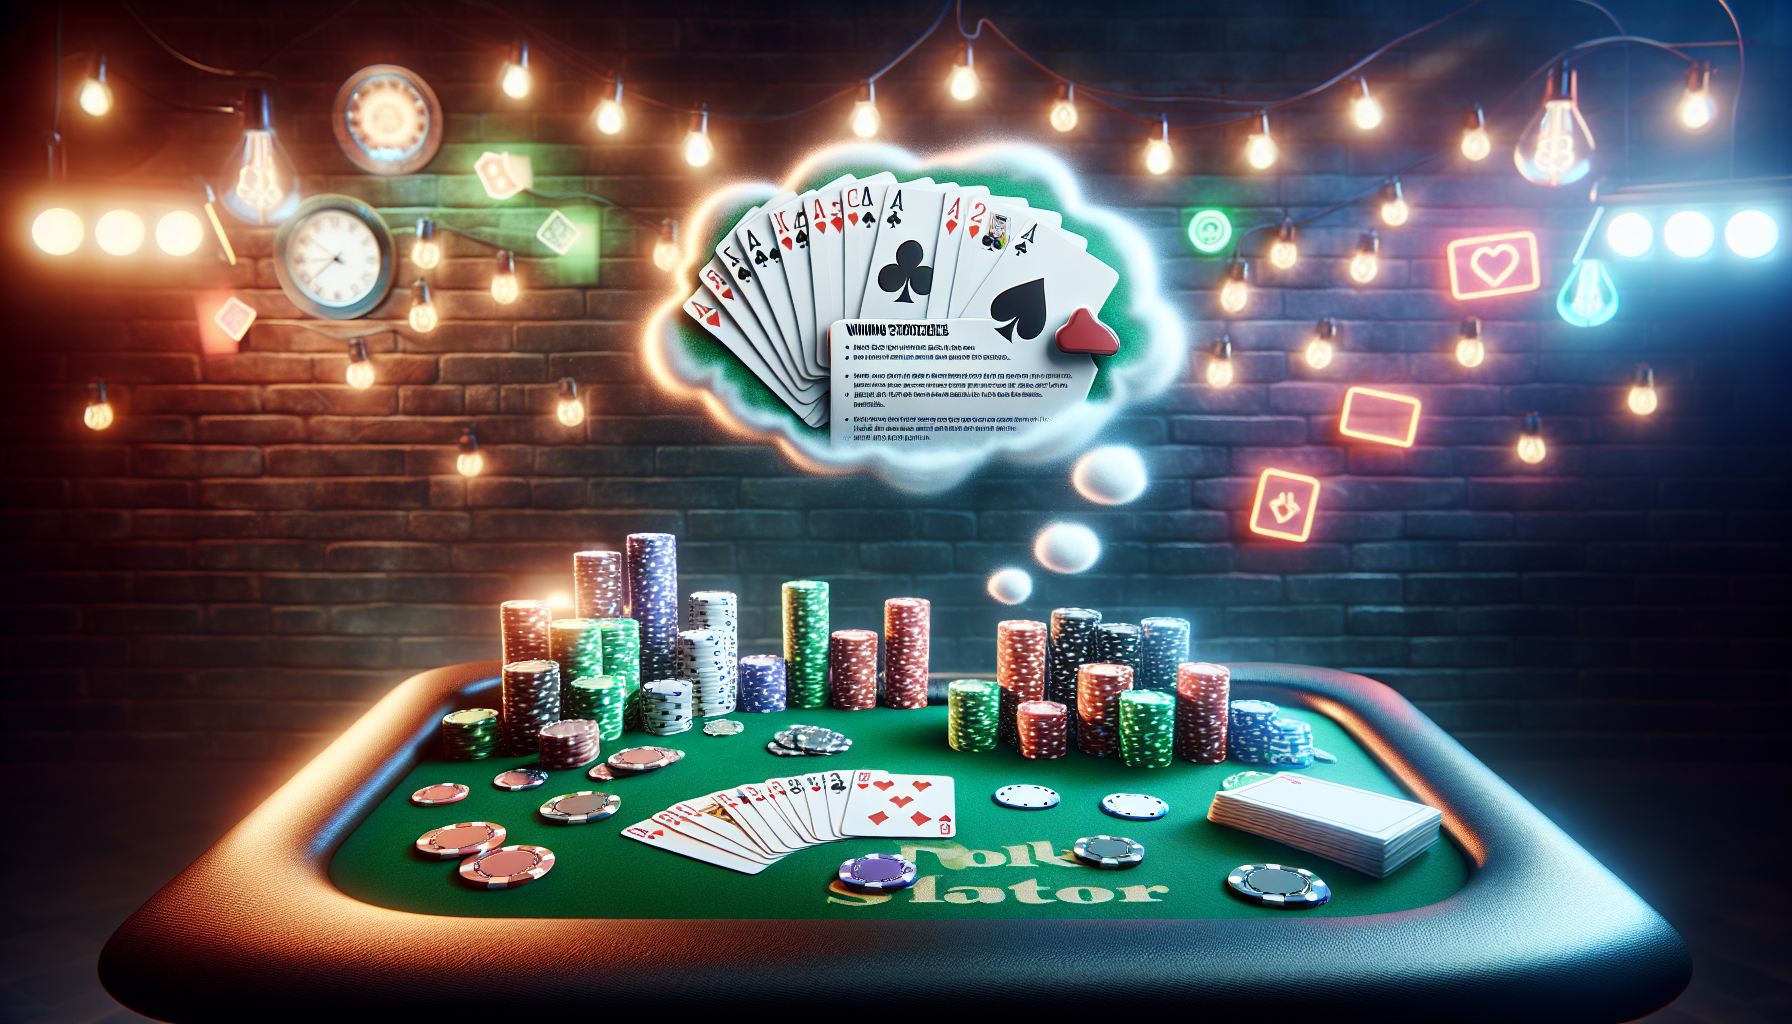 découvrez les meilleures stratégies gagnantes au poker pour améliorer vos performances de jeu et maximiser vos gains.